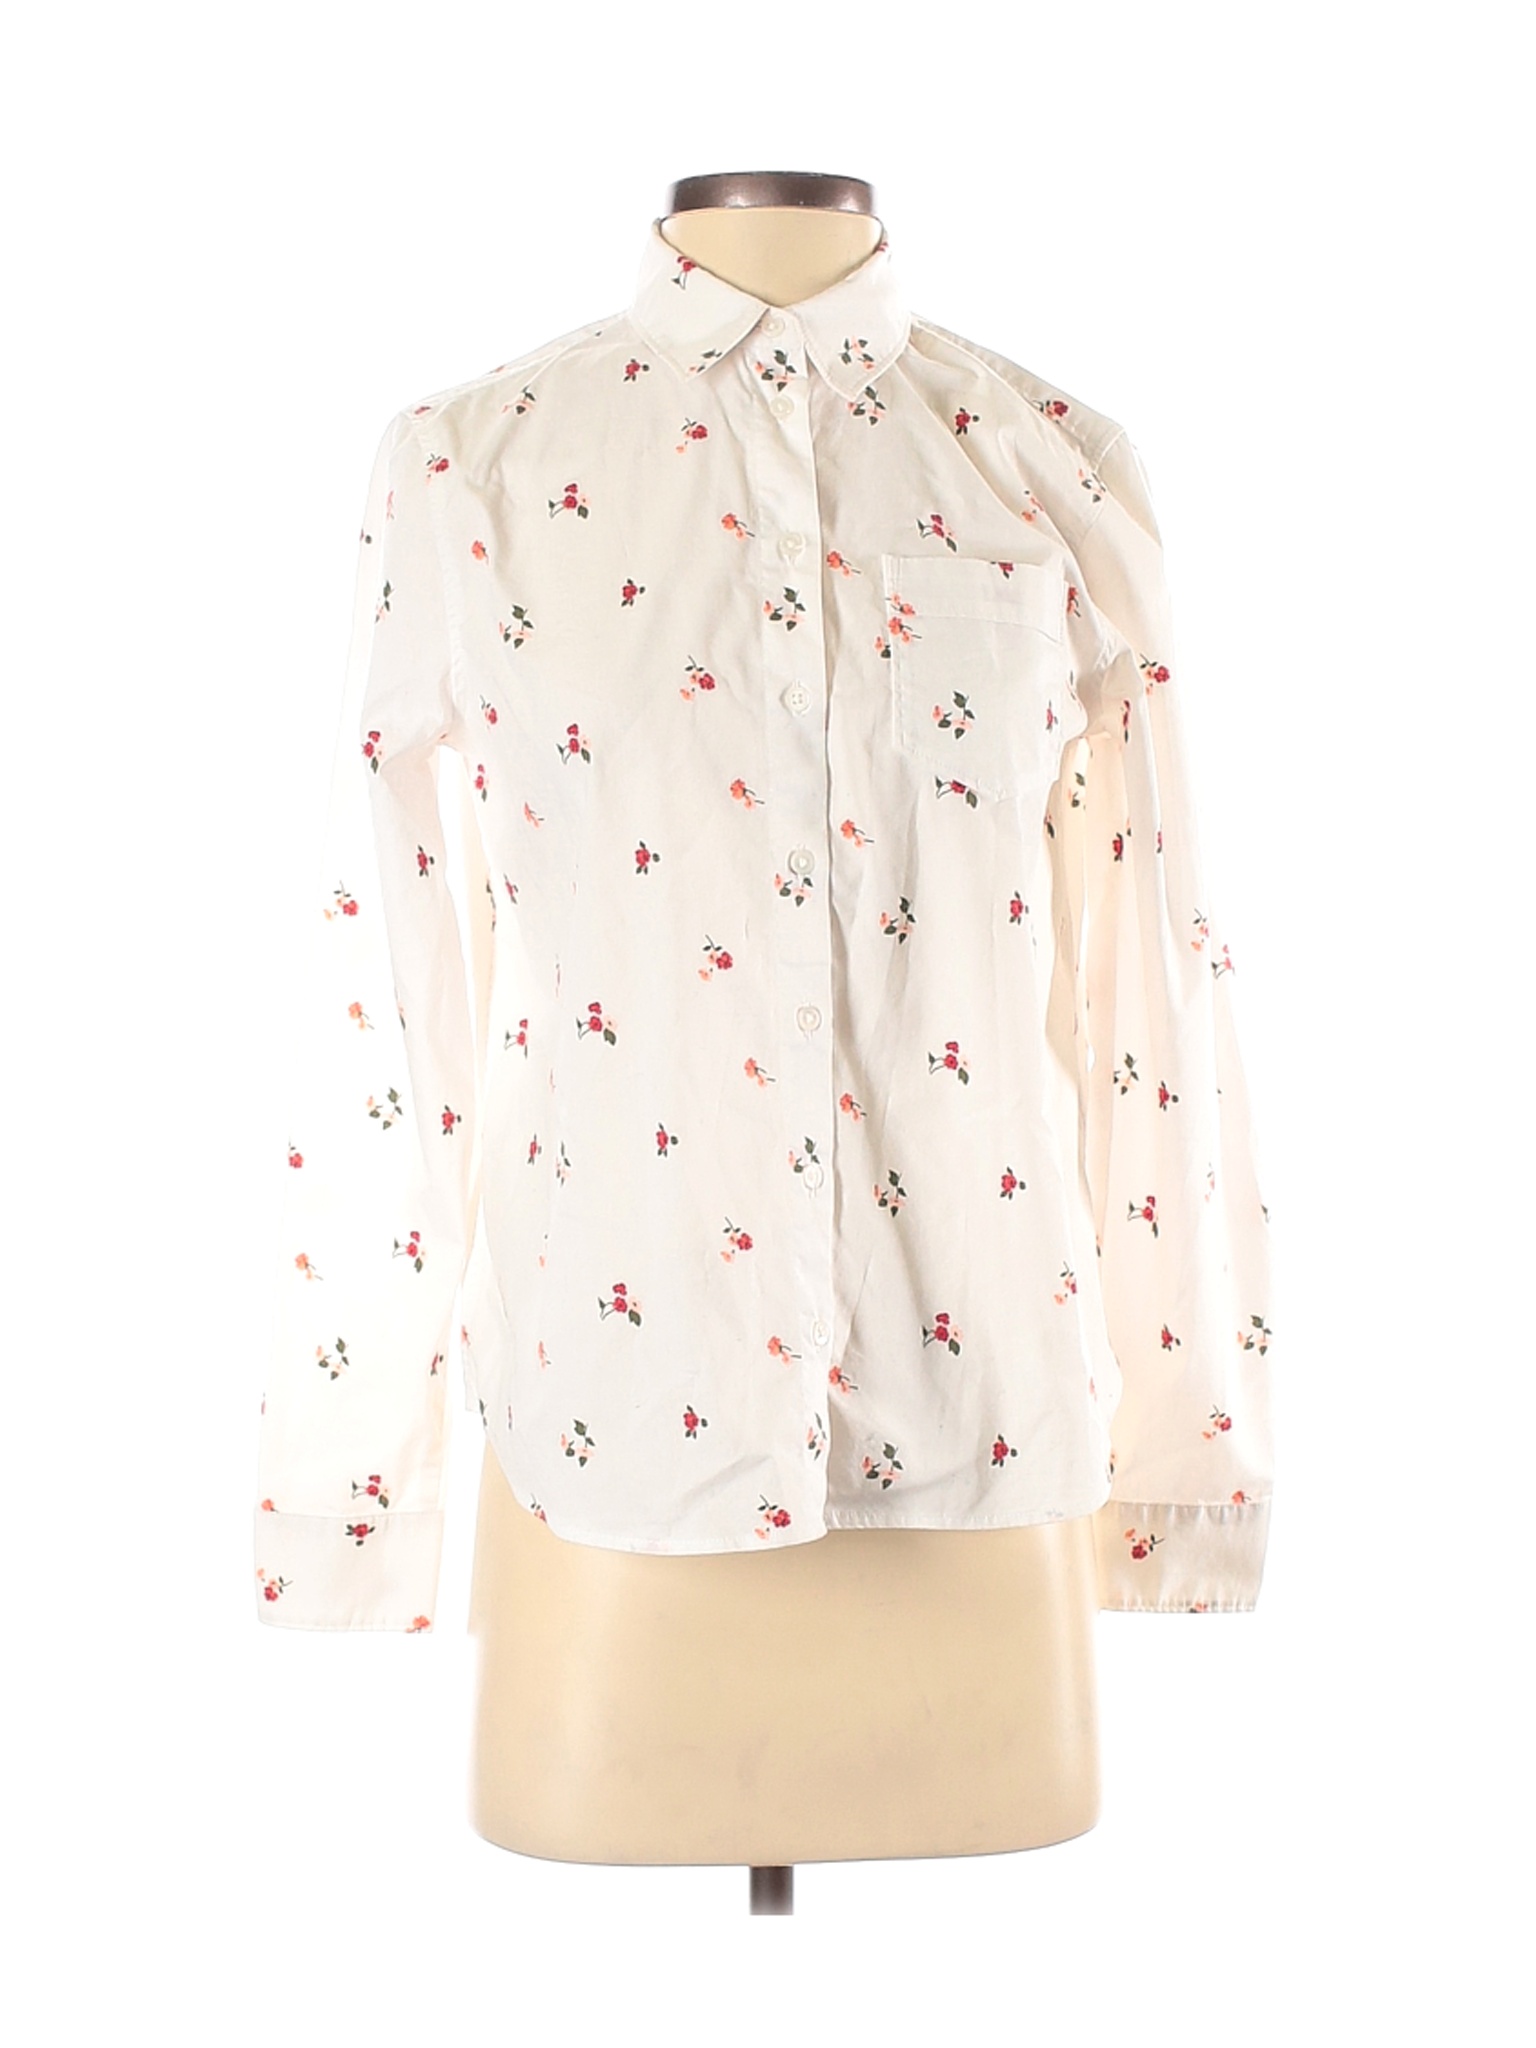 Banana Republic Women Ivory Long Sleeve Button-Down Shirt XS | eBay